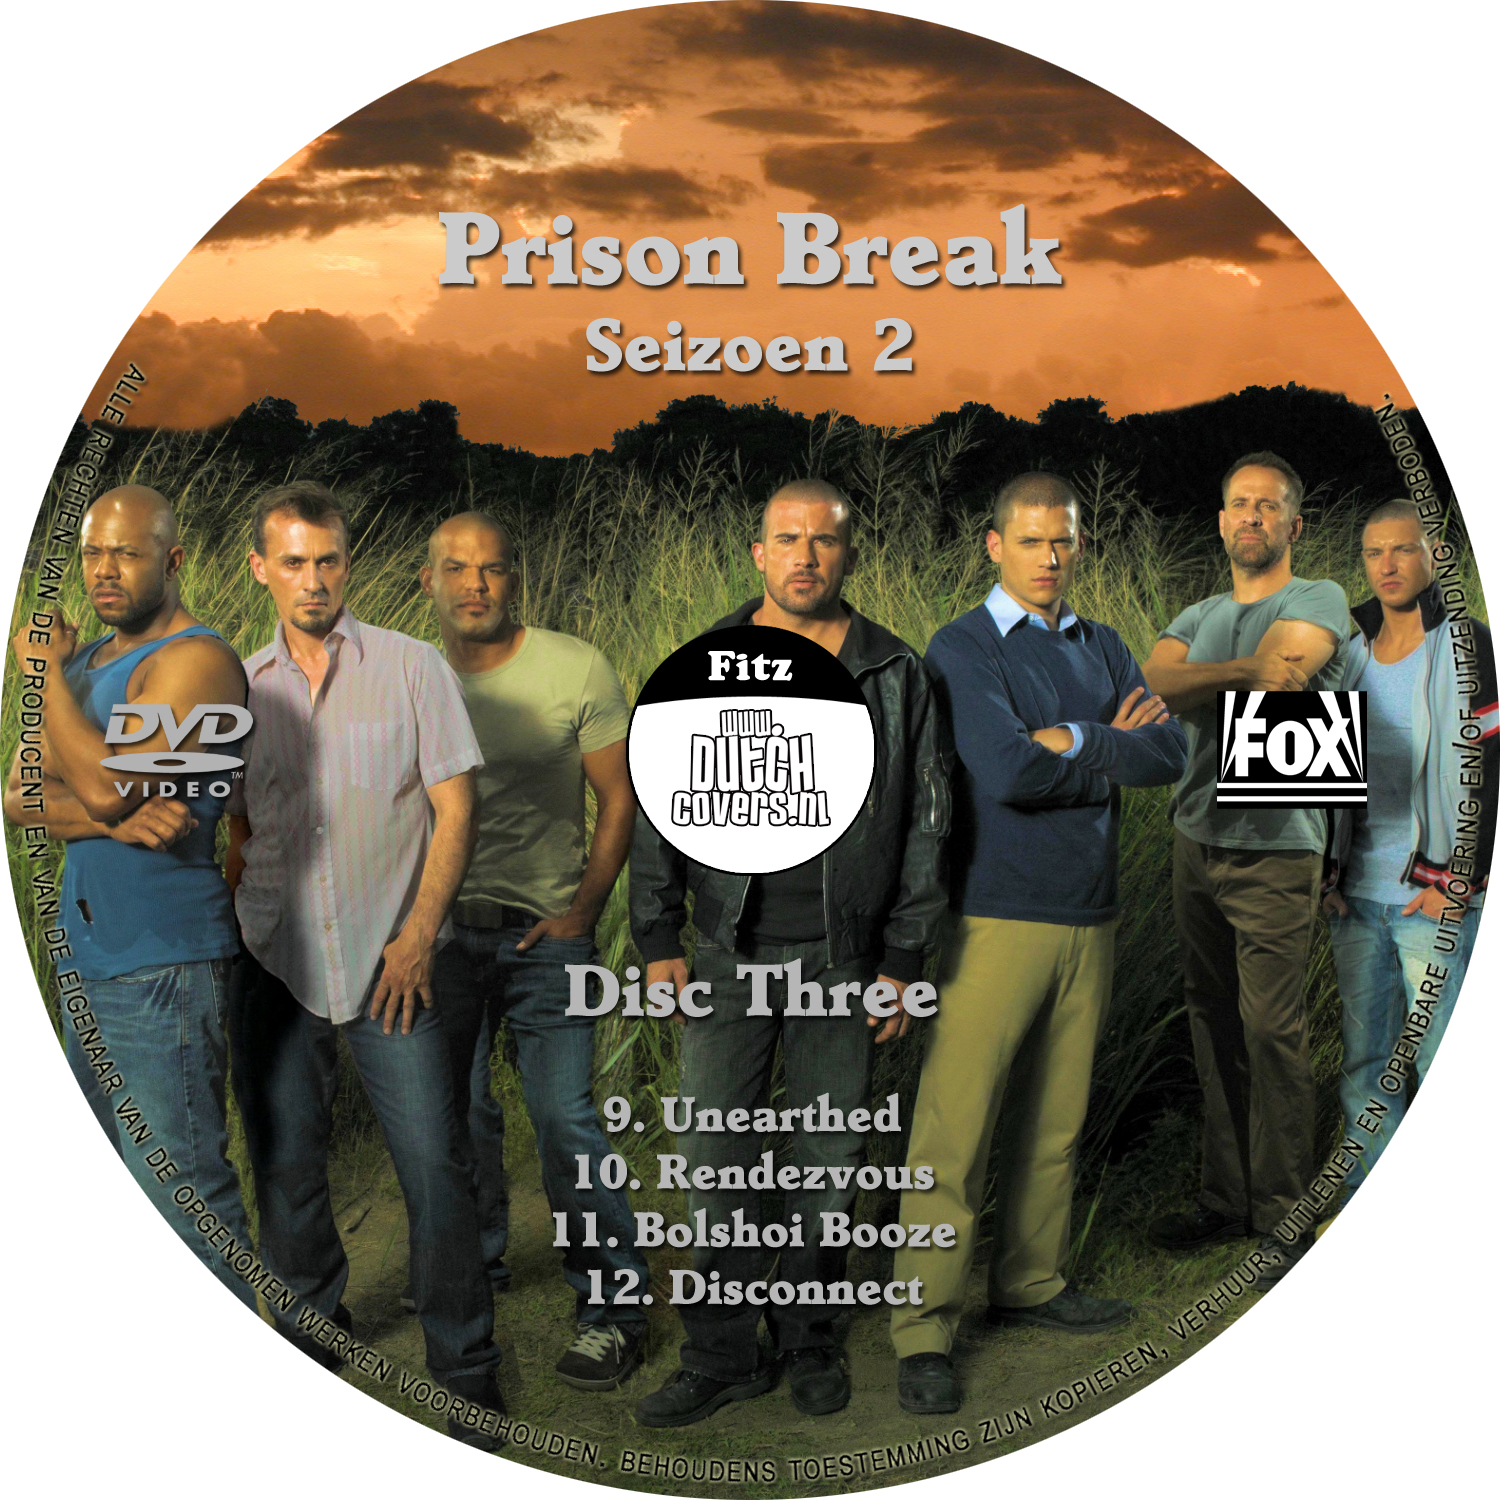 Prison Break Seizoen 2 dvd 3